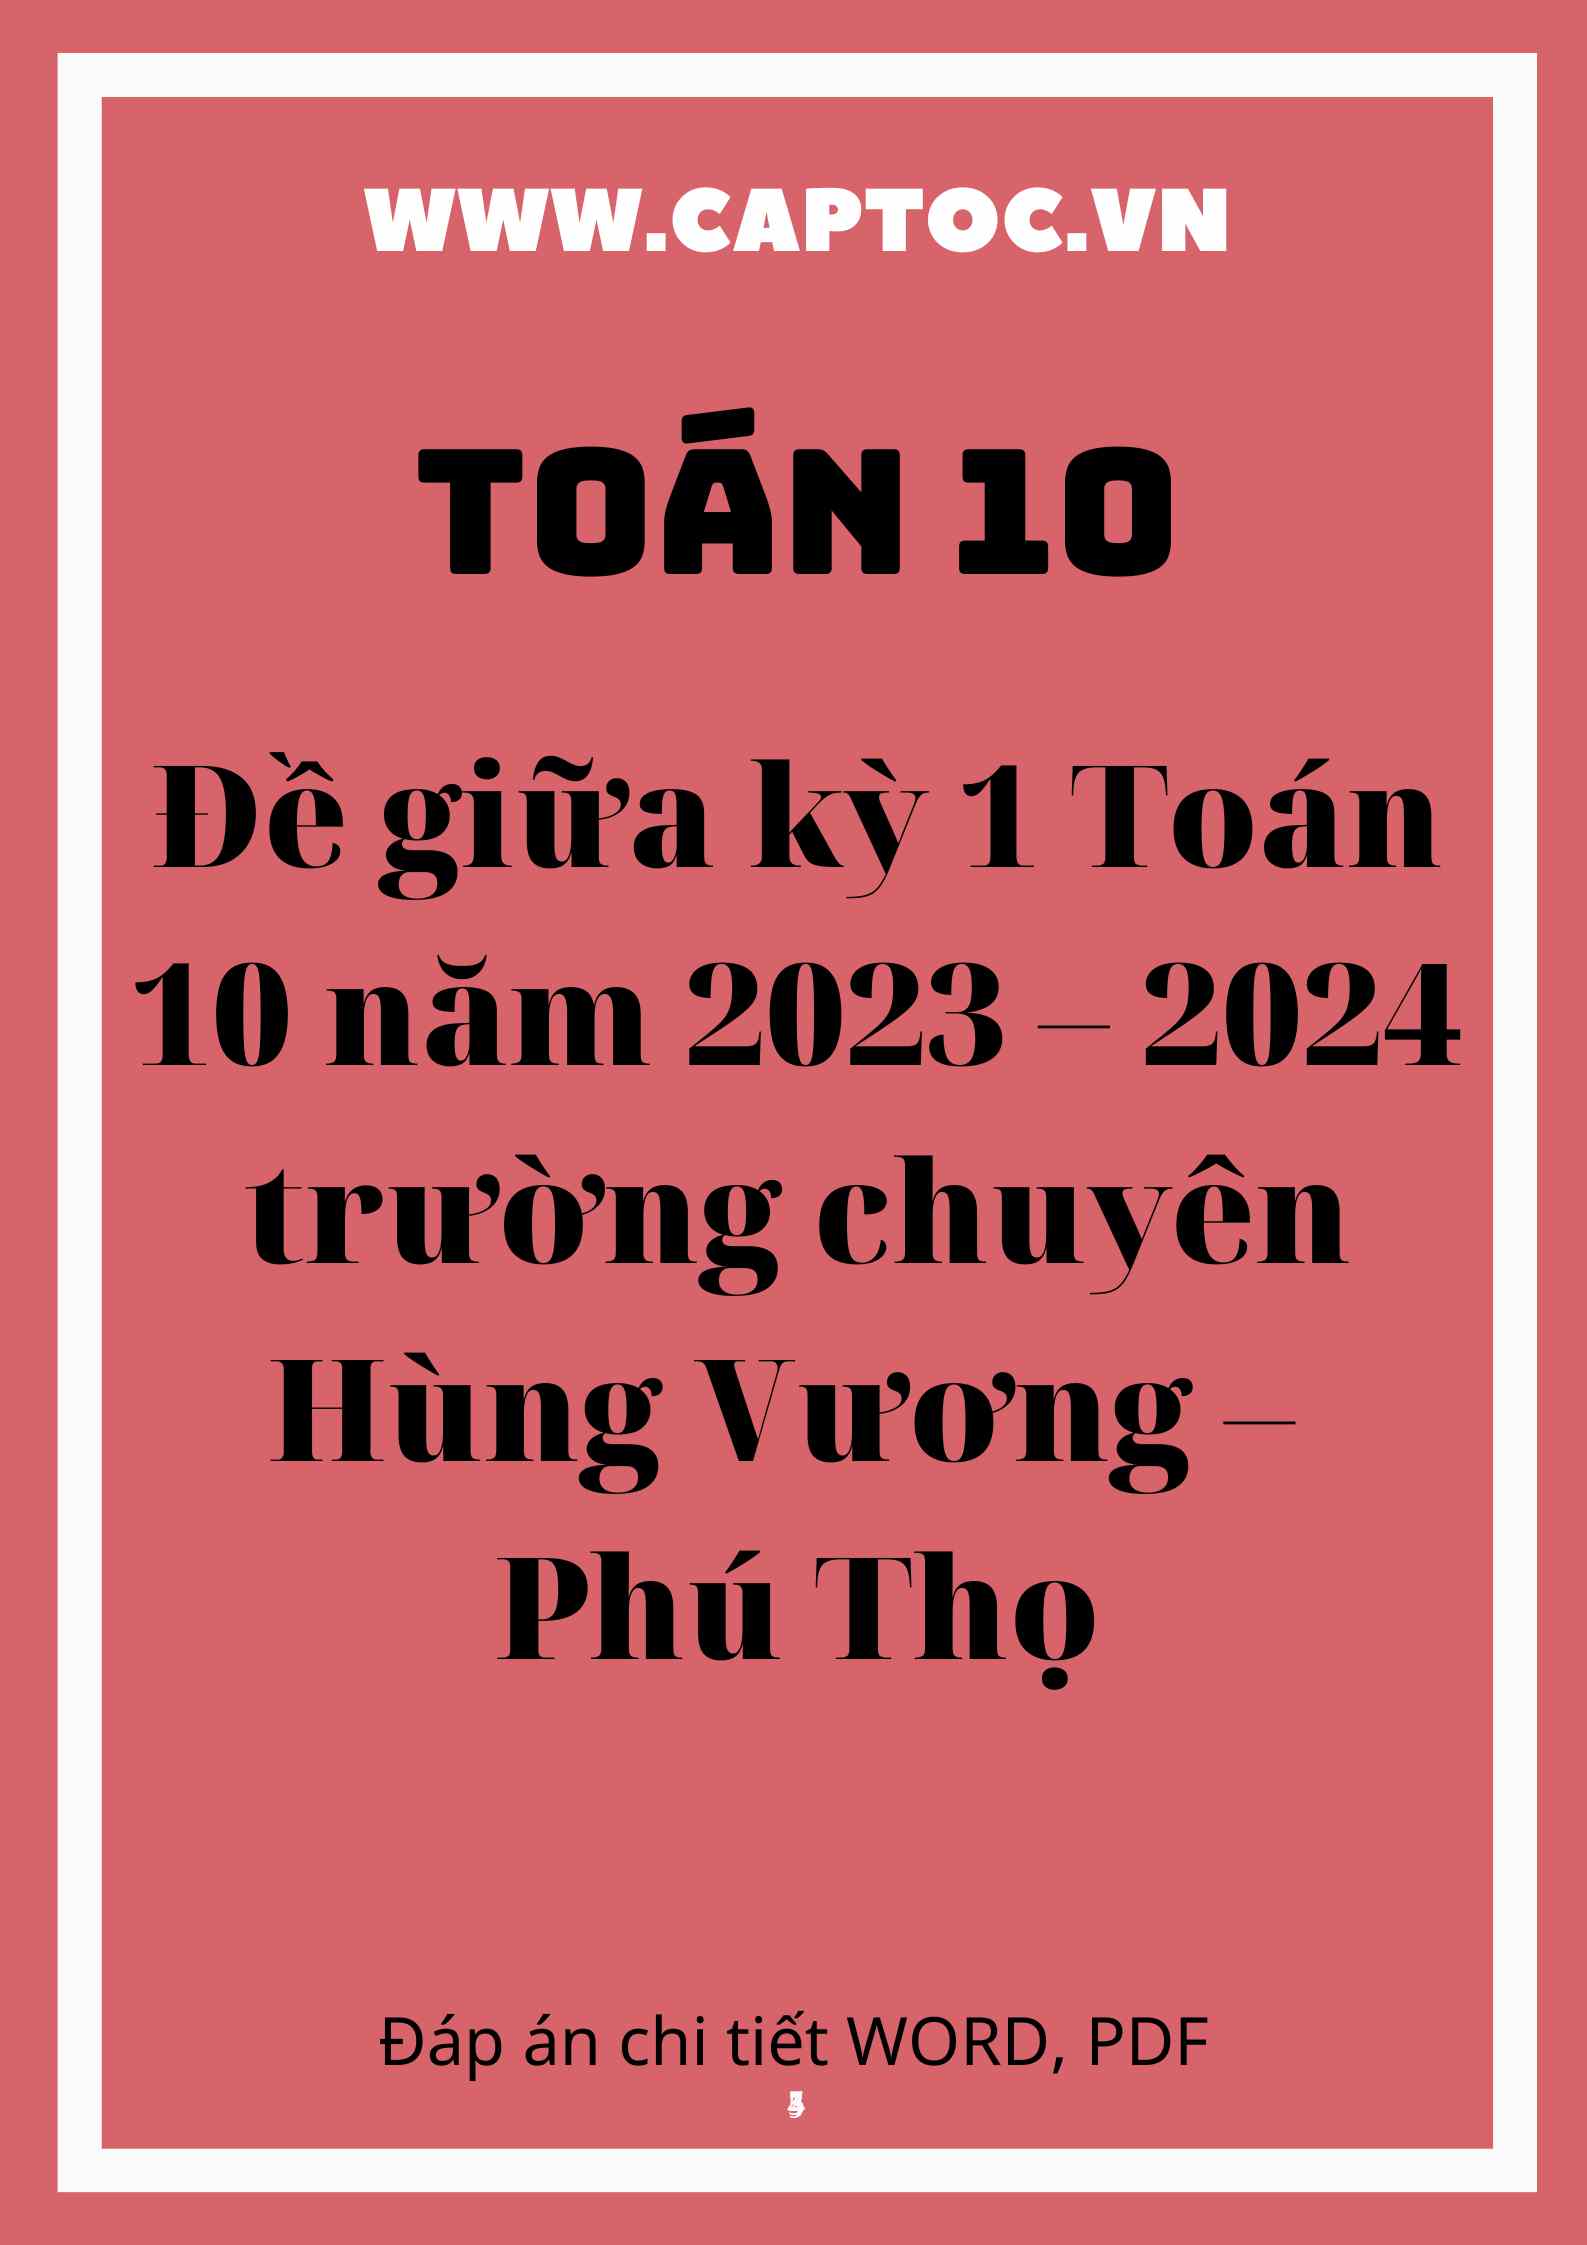 Đề giữa kỳ 1 Toán 10 năm 2023 – 2024 trường chuyên Hùng Vương – Phú Thọ